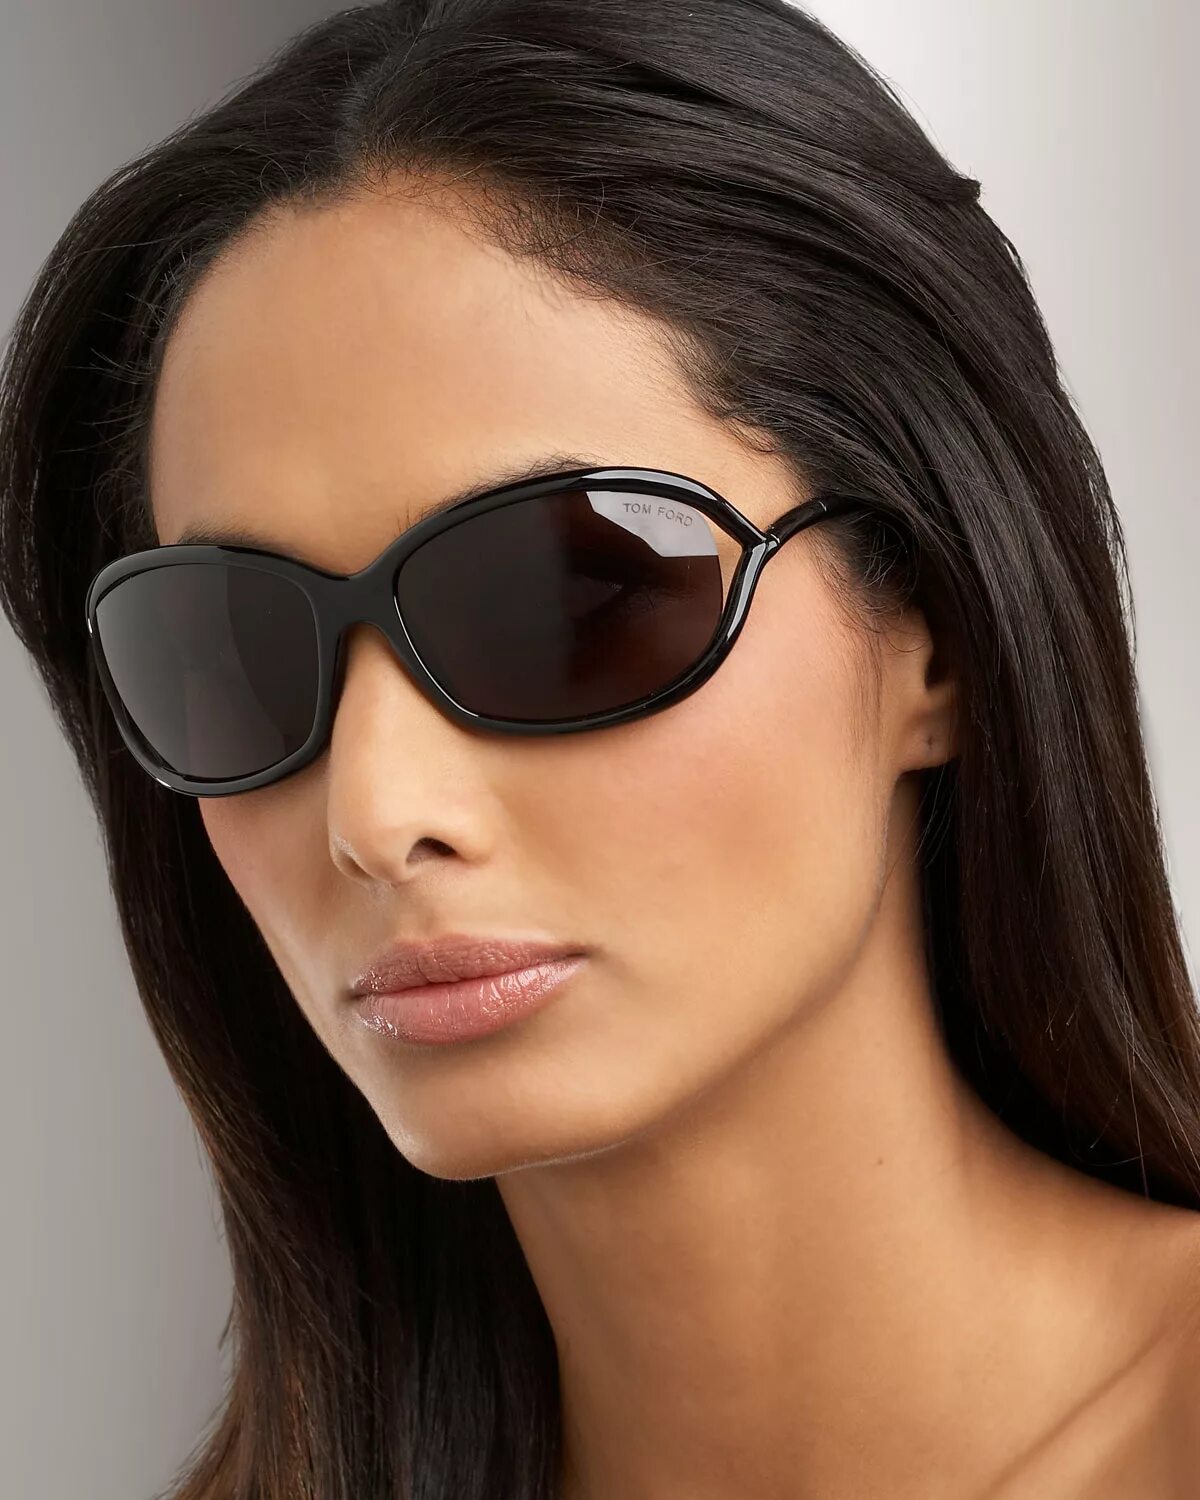 Купить хорошие солнцезащитные очки. Tom Ford Sunglasses очки. Солнцезащитные очки Tom Ford Jennifer. Tom Ford очки солнцезащитные Wayfarer. Tom Ford Glasses ft5224.